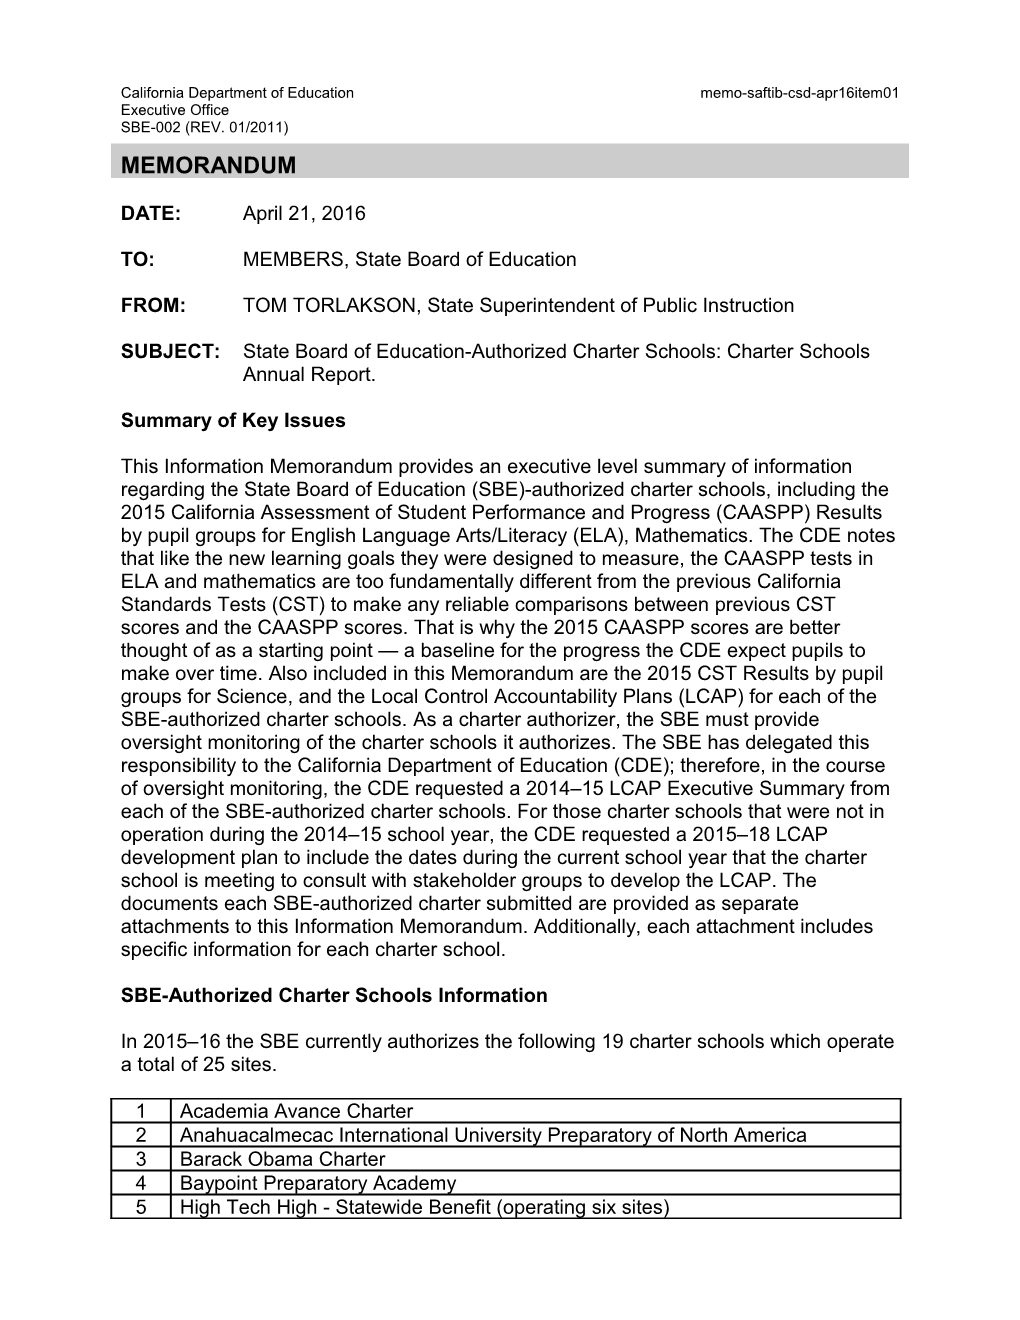 April 2016 Memo CSD Item 01 Revised - Information Memorandum (CA State Board of Education)